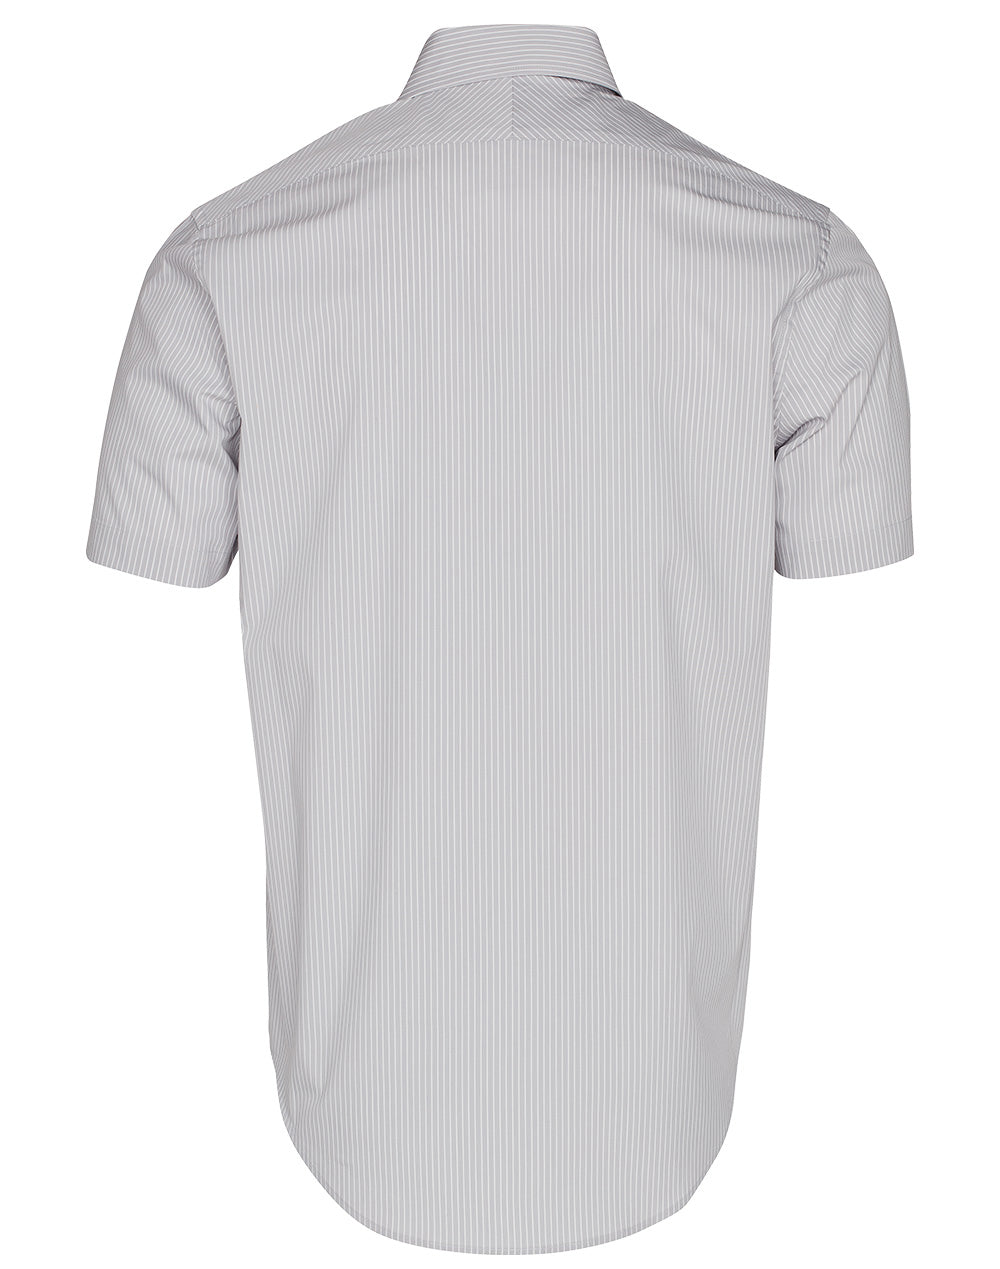 Benchmark M7200S Men's Ticking Stripe Short Sleeve Shirt